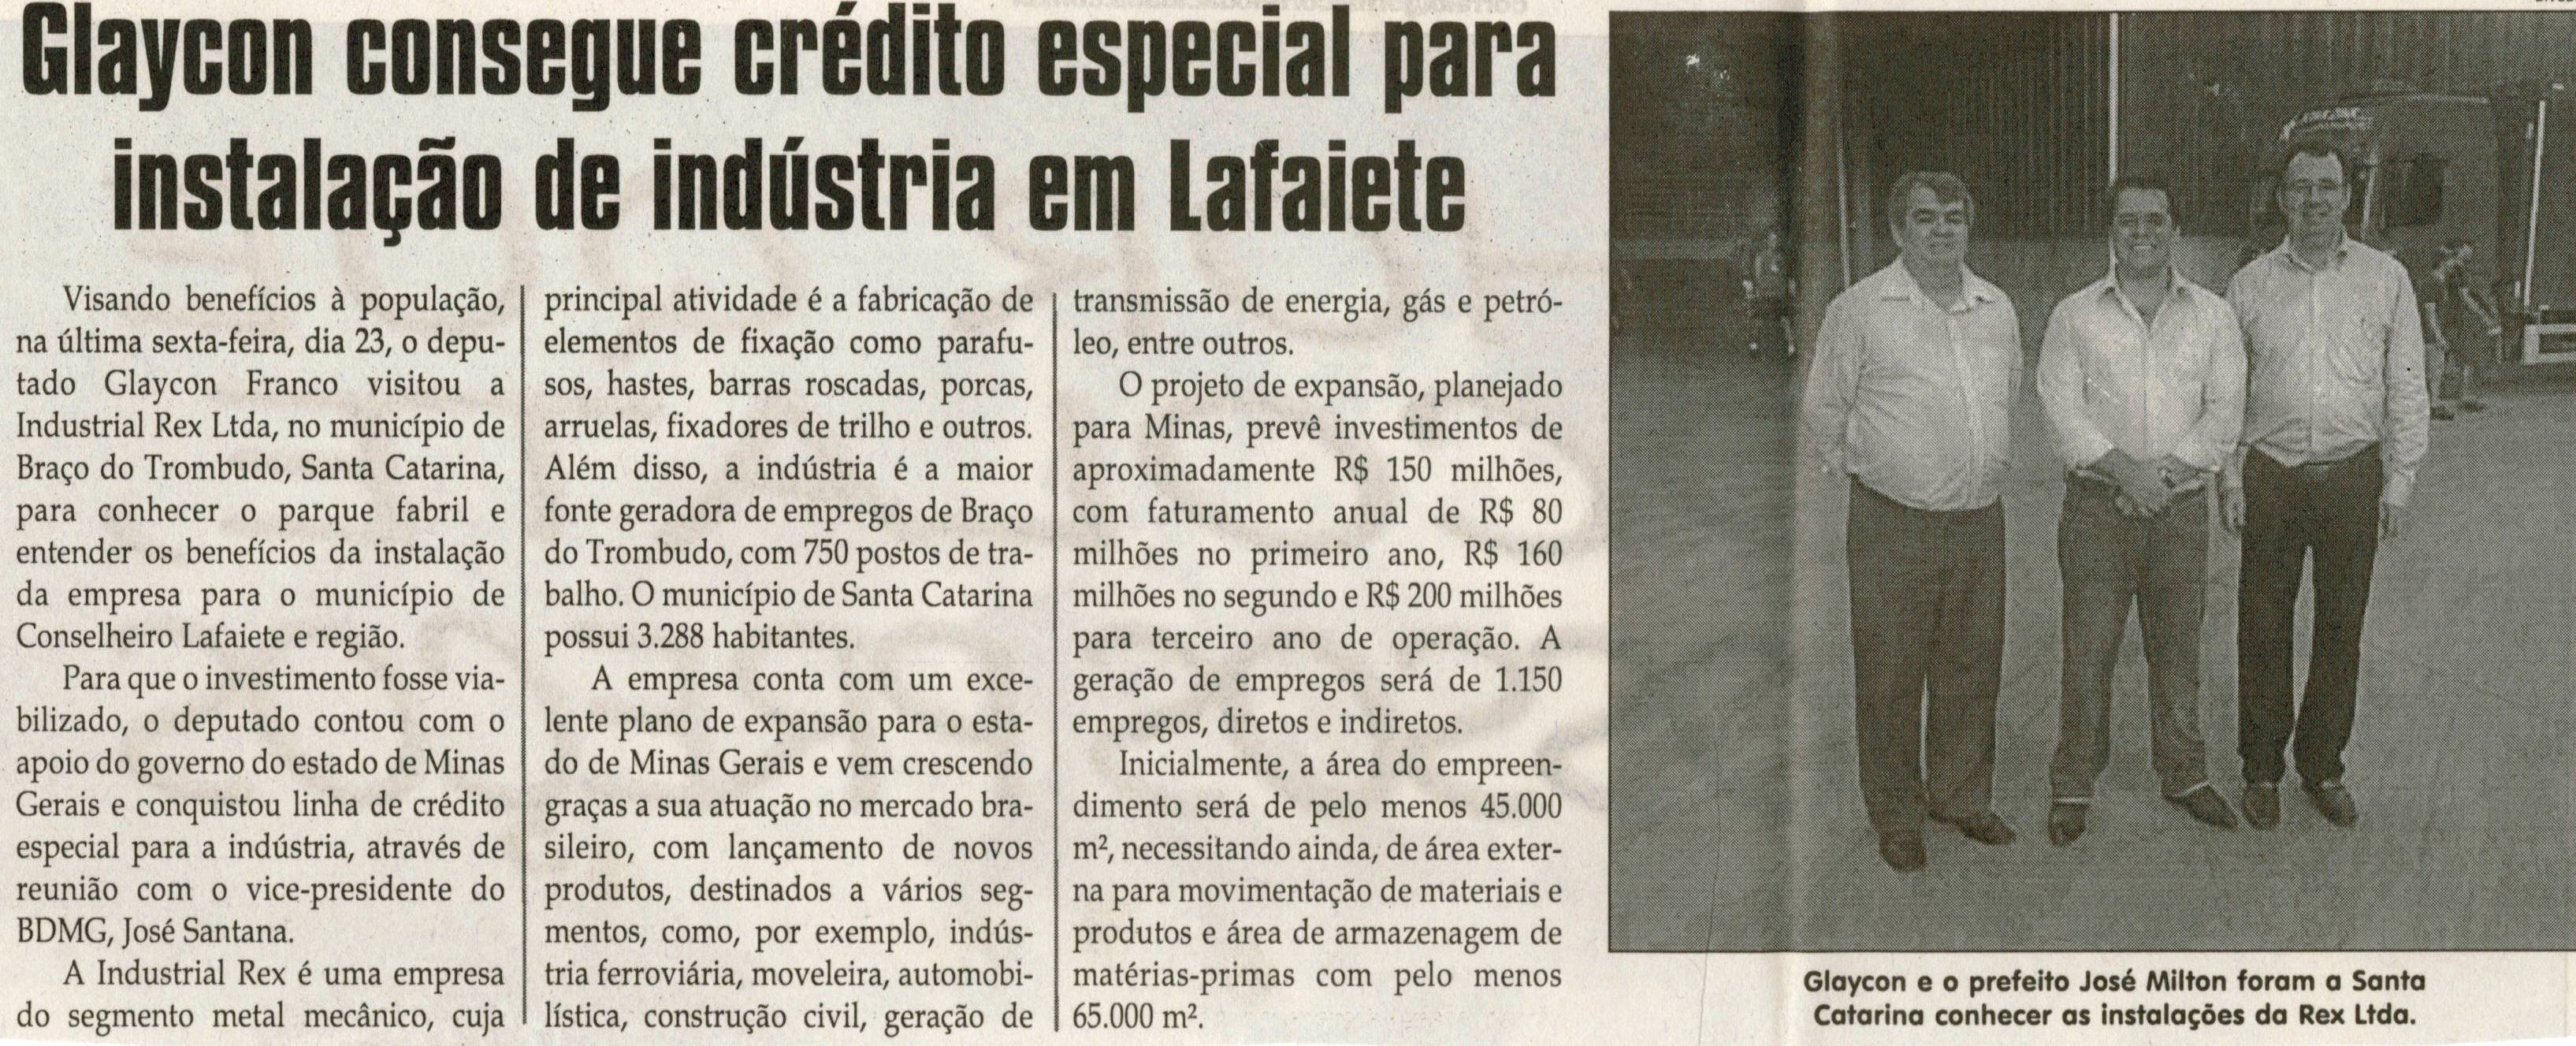 Glaycon consegue crédito especial para instalação de indústria em Lafaiete. Jornal Correio da Cidade, Conselheiro Lafaiete, 31 mar. 2012, p. 04.